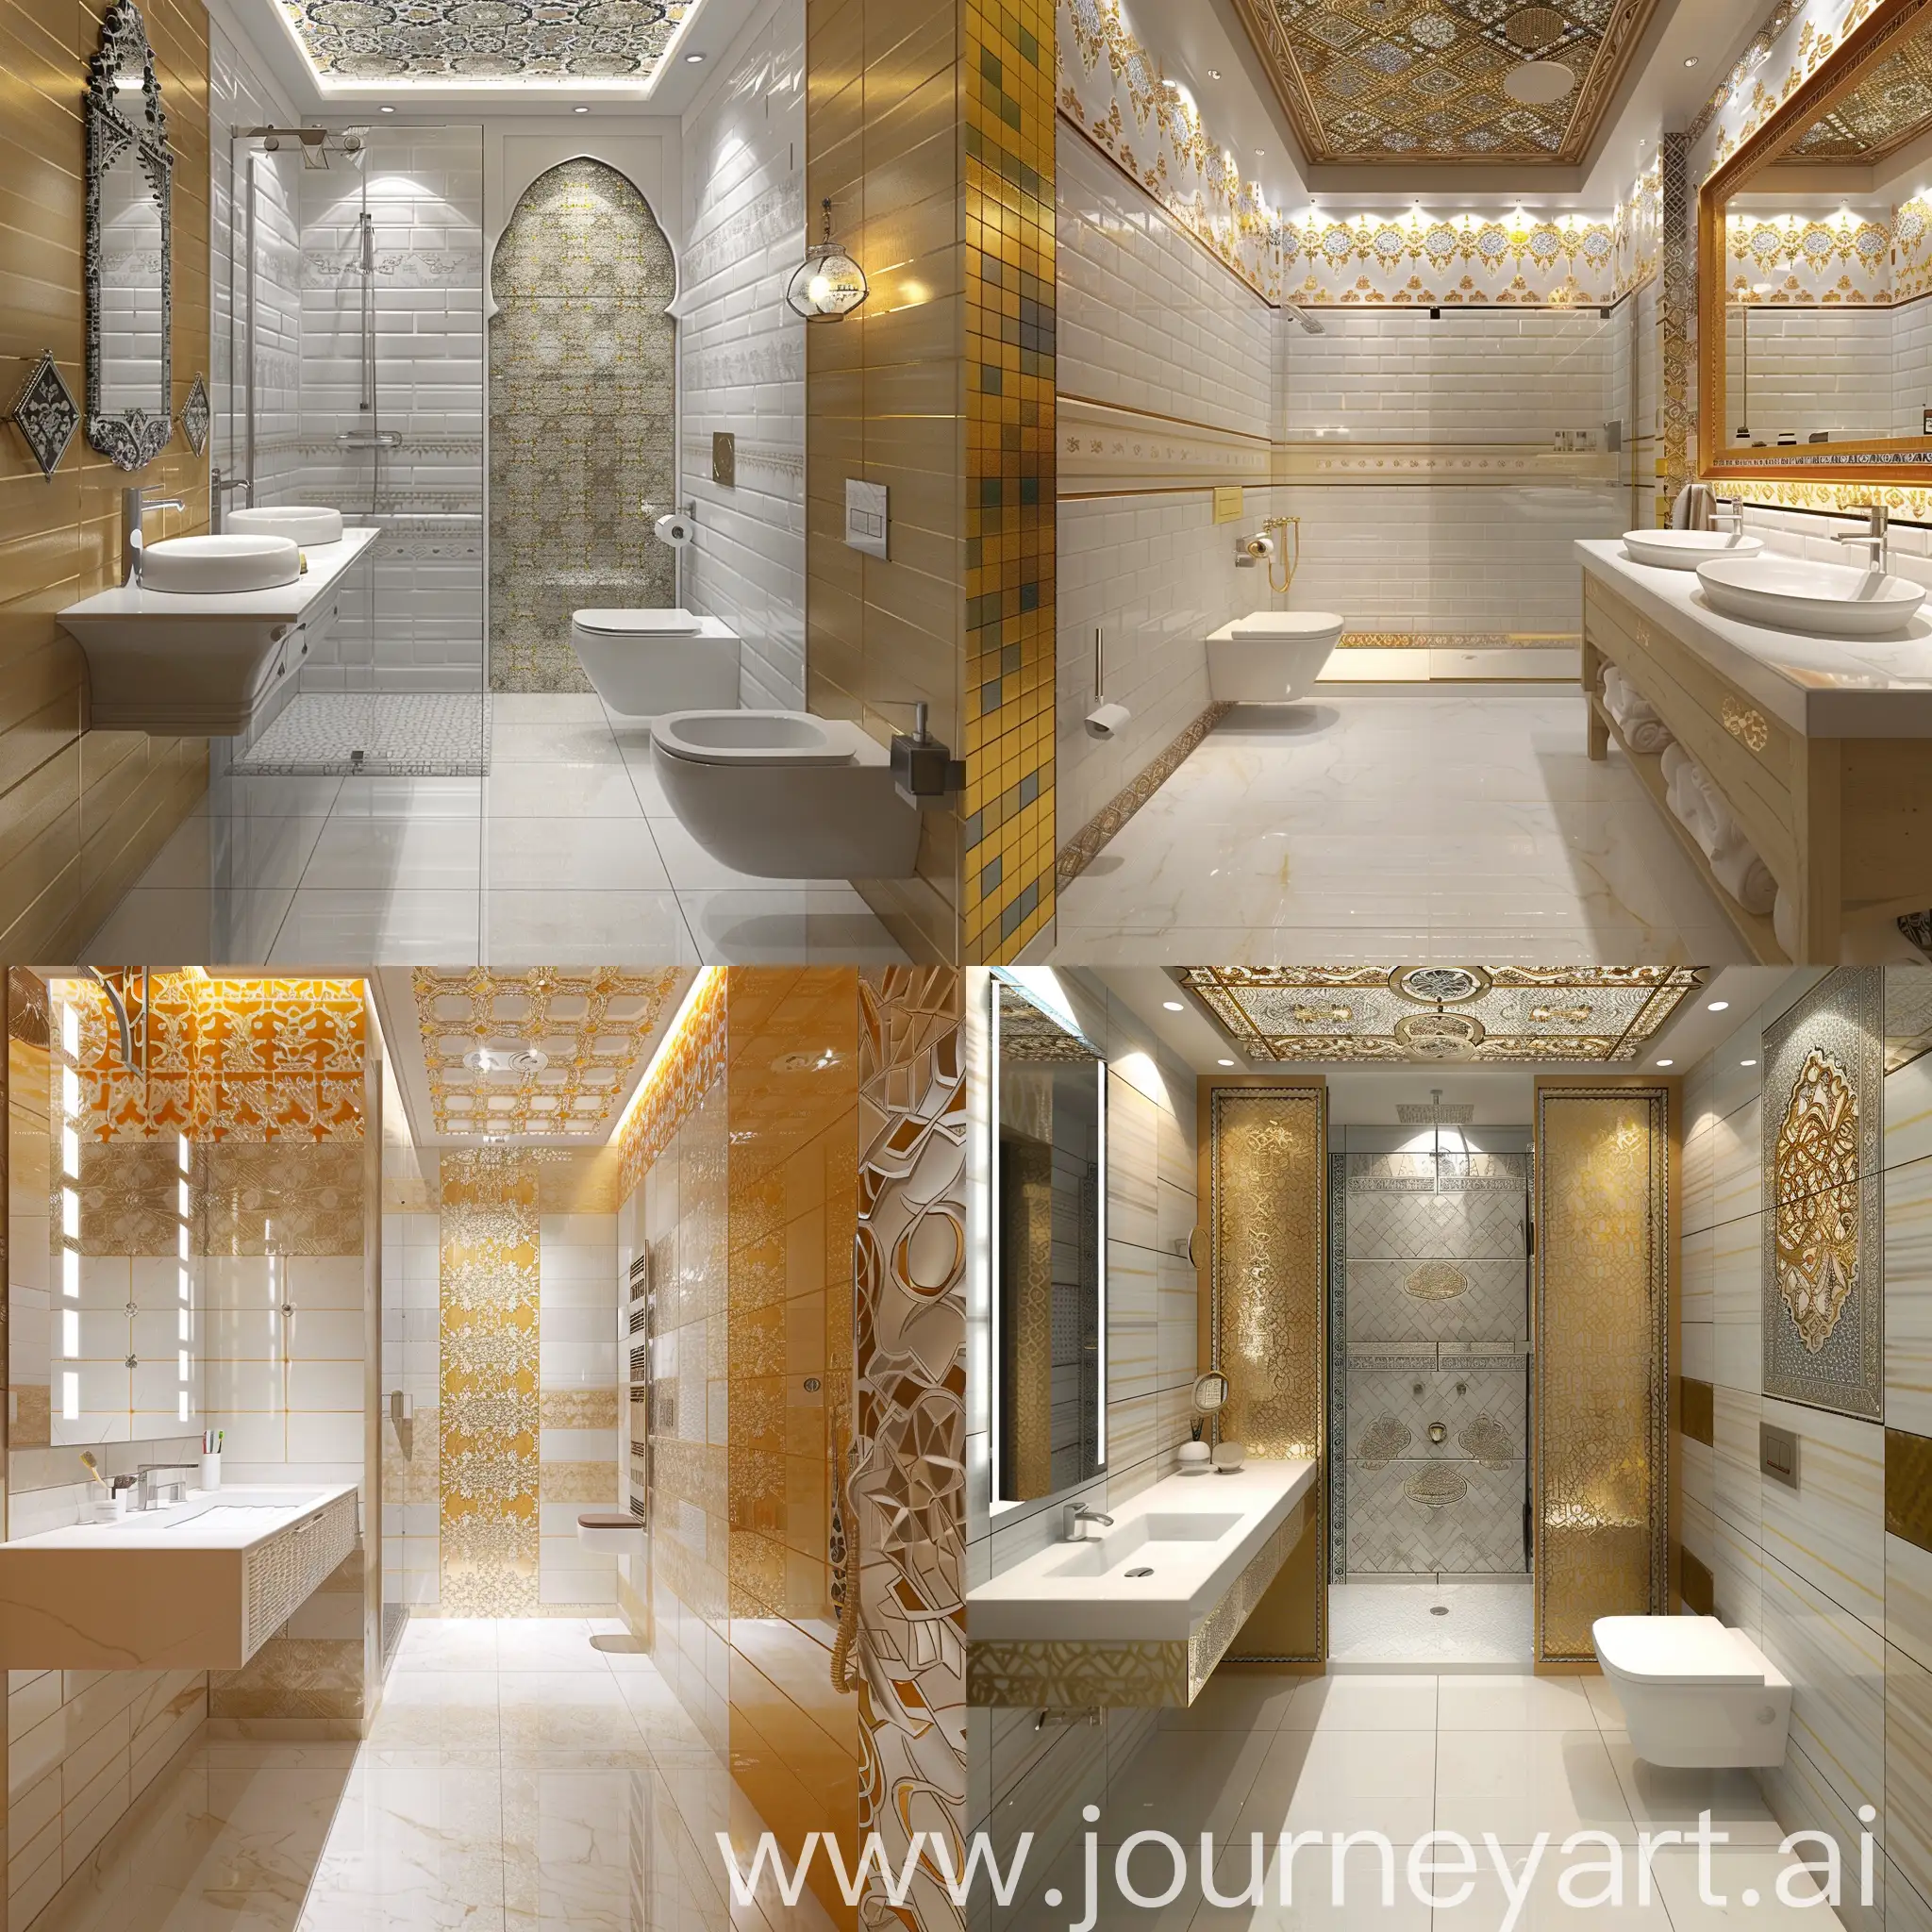 Сделай рендер дизайна для ванной комнаты площадью 3.41 квадратных метра в стиле Марокко, где на полу белый глянцевый камень, на стенах золотая и белая плитка с восточными элементами интерьера, с восточными узорами на потолке, есть раковина, душевая кабина и подвесной унитаз